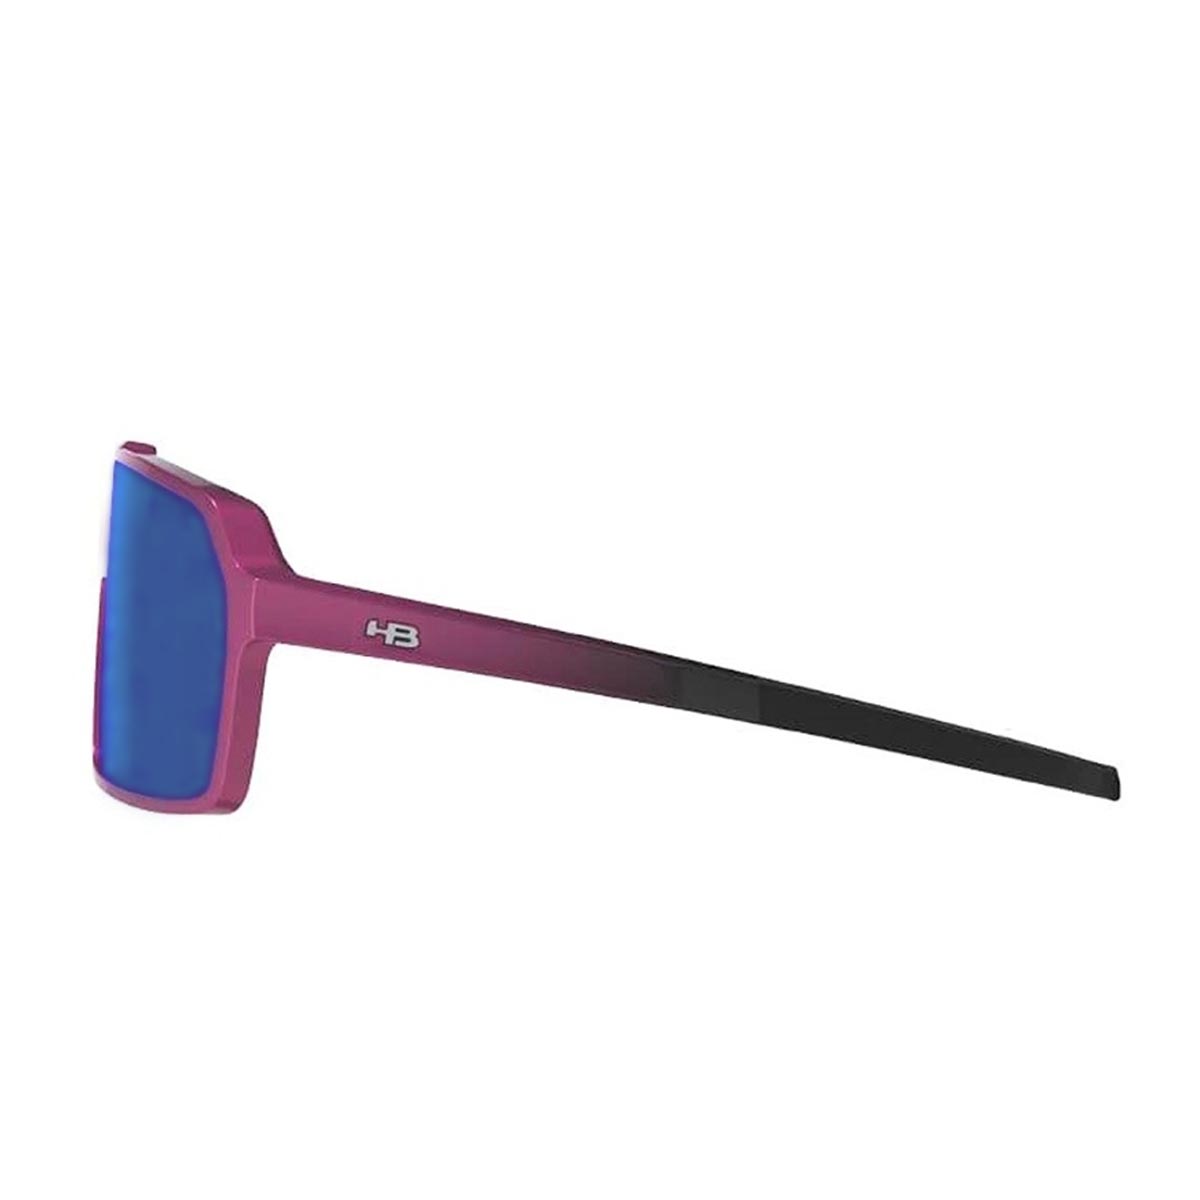 Oculos para Ciclismo HB Grinder Pink Gradiente Mirror Lente Azul Chrome Espelhada